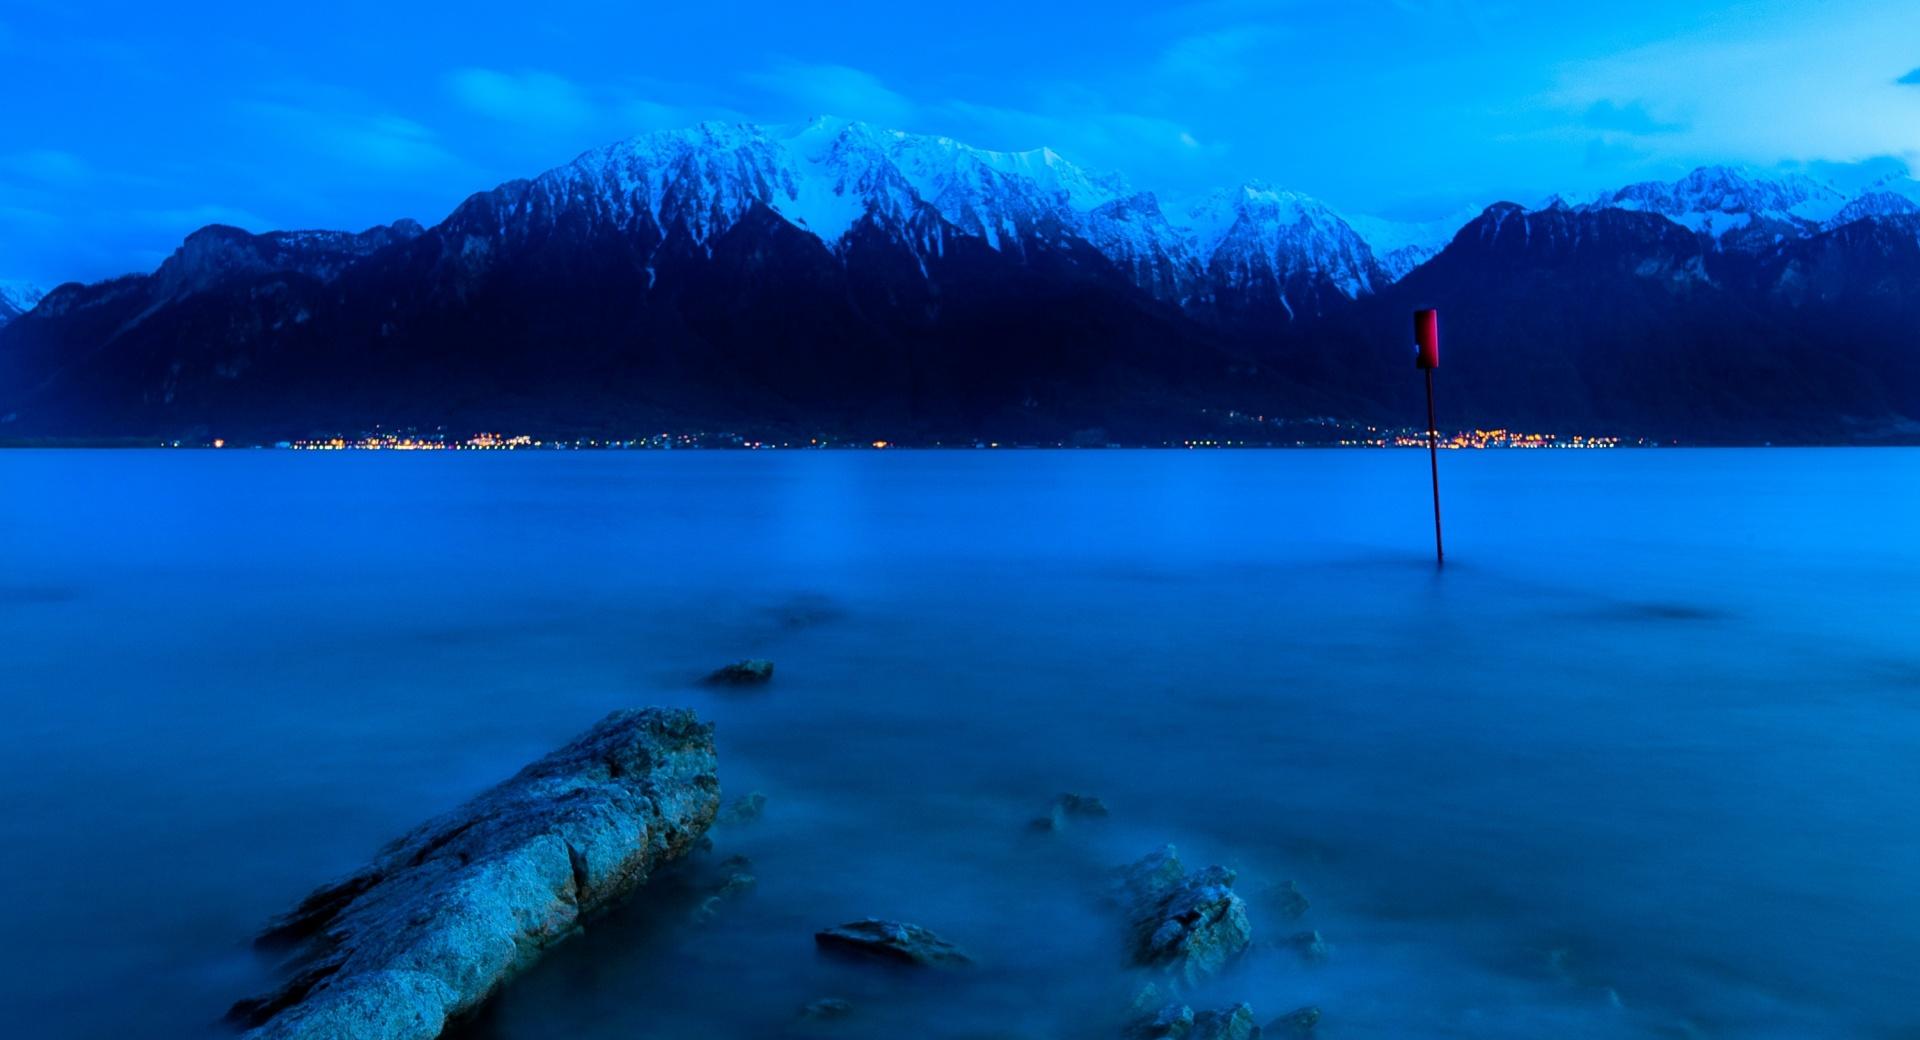 Lake At Night at 1024 x 1024 iPad size wallpapers HD quality